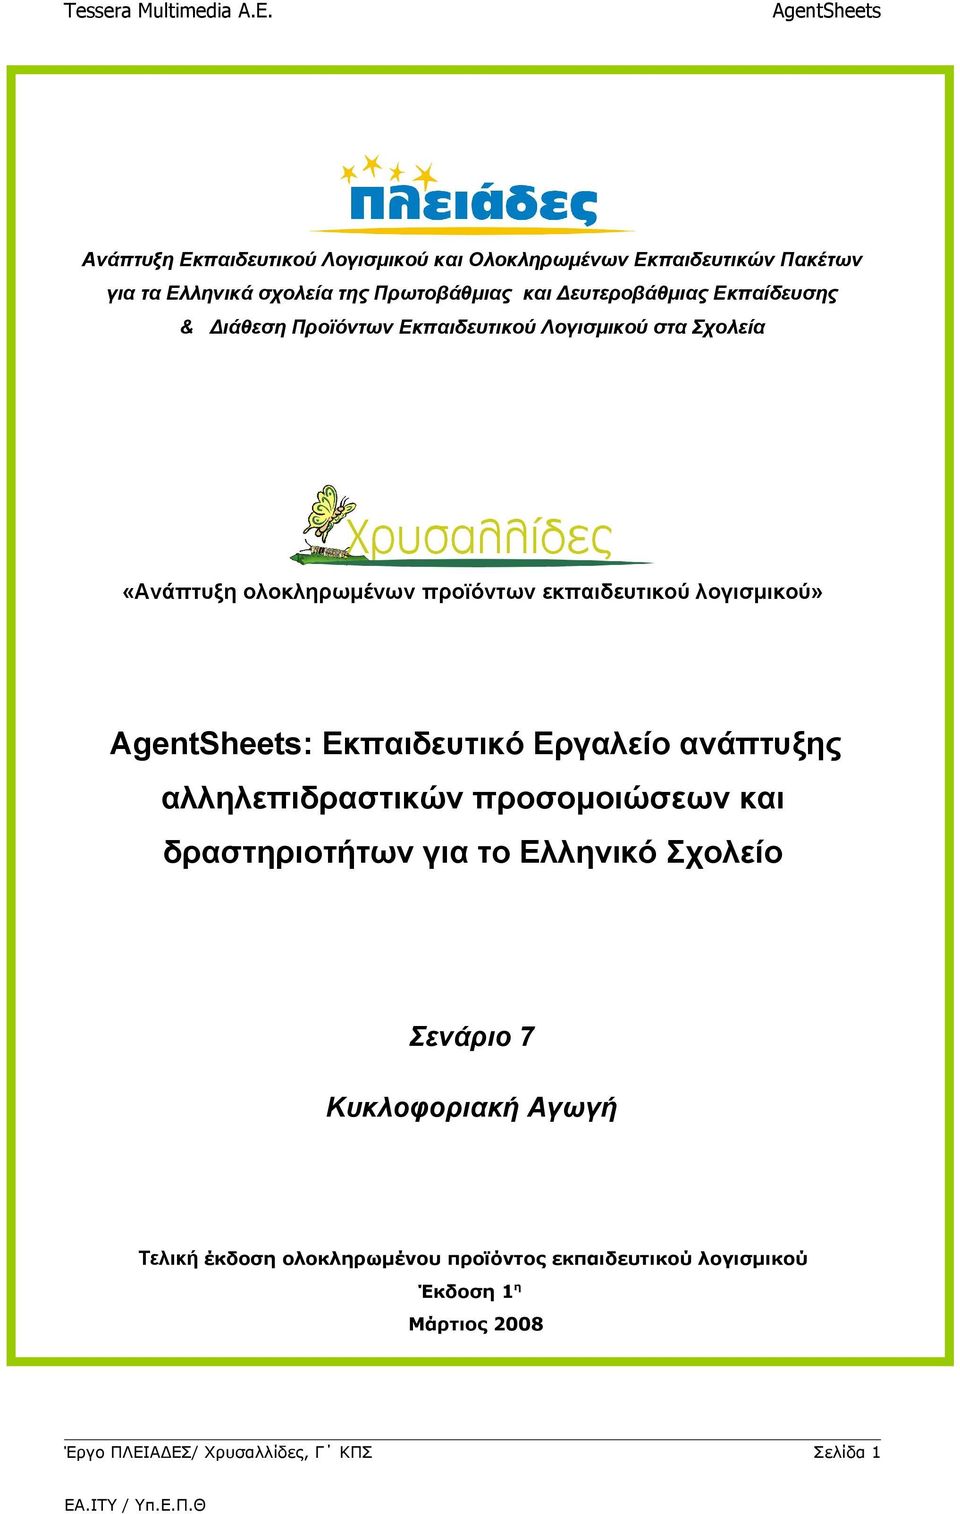 λογισμικού» : Εκπαιδευτικό Εργαλείο ανάπτυξης αλληλεπιδραστικών προσομοιώσεων και δραστηριοτήτων για το Ελληνικό Σχολείο Σενάριο 7